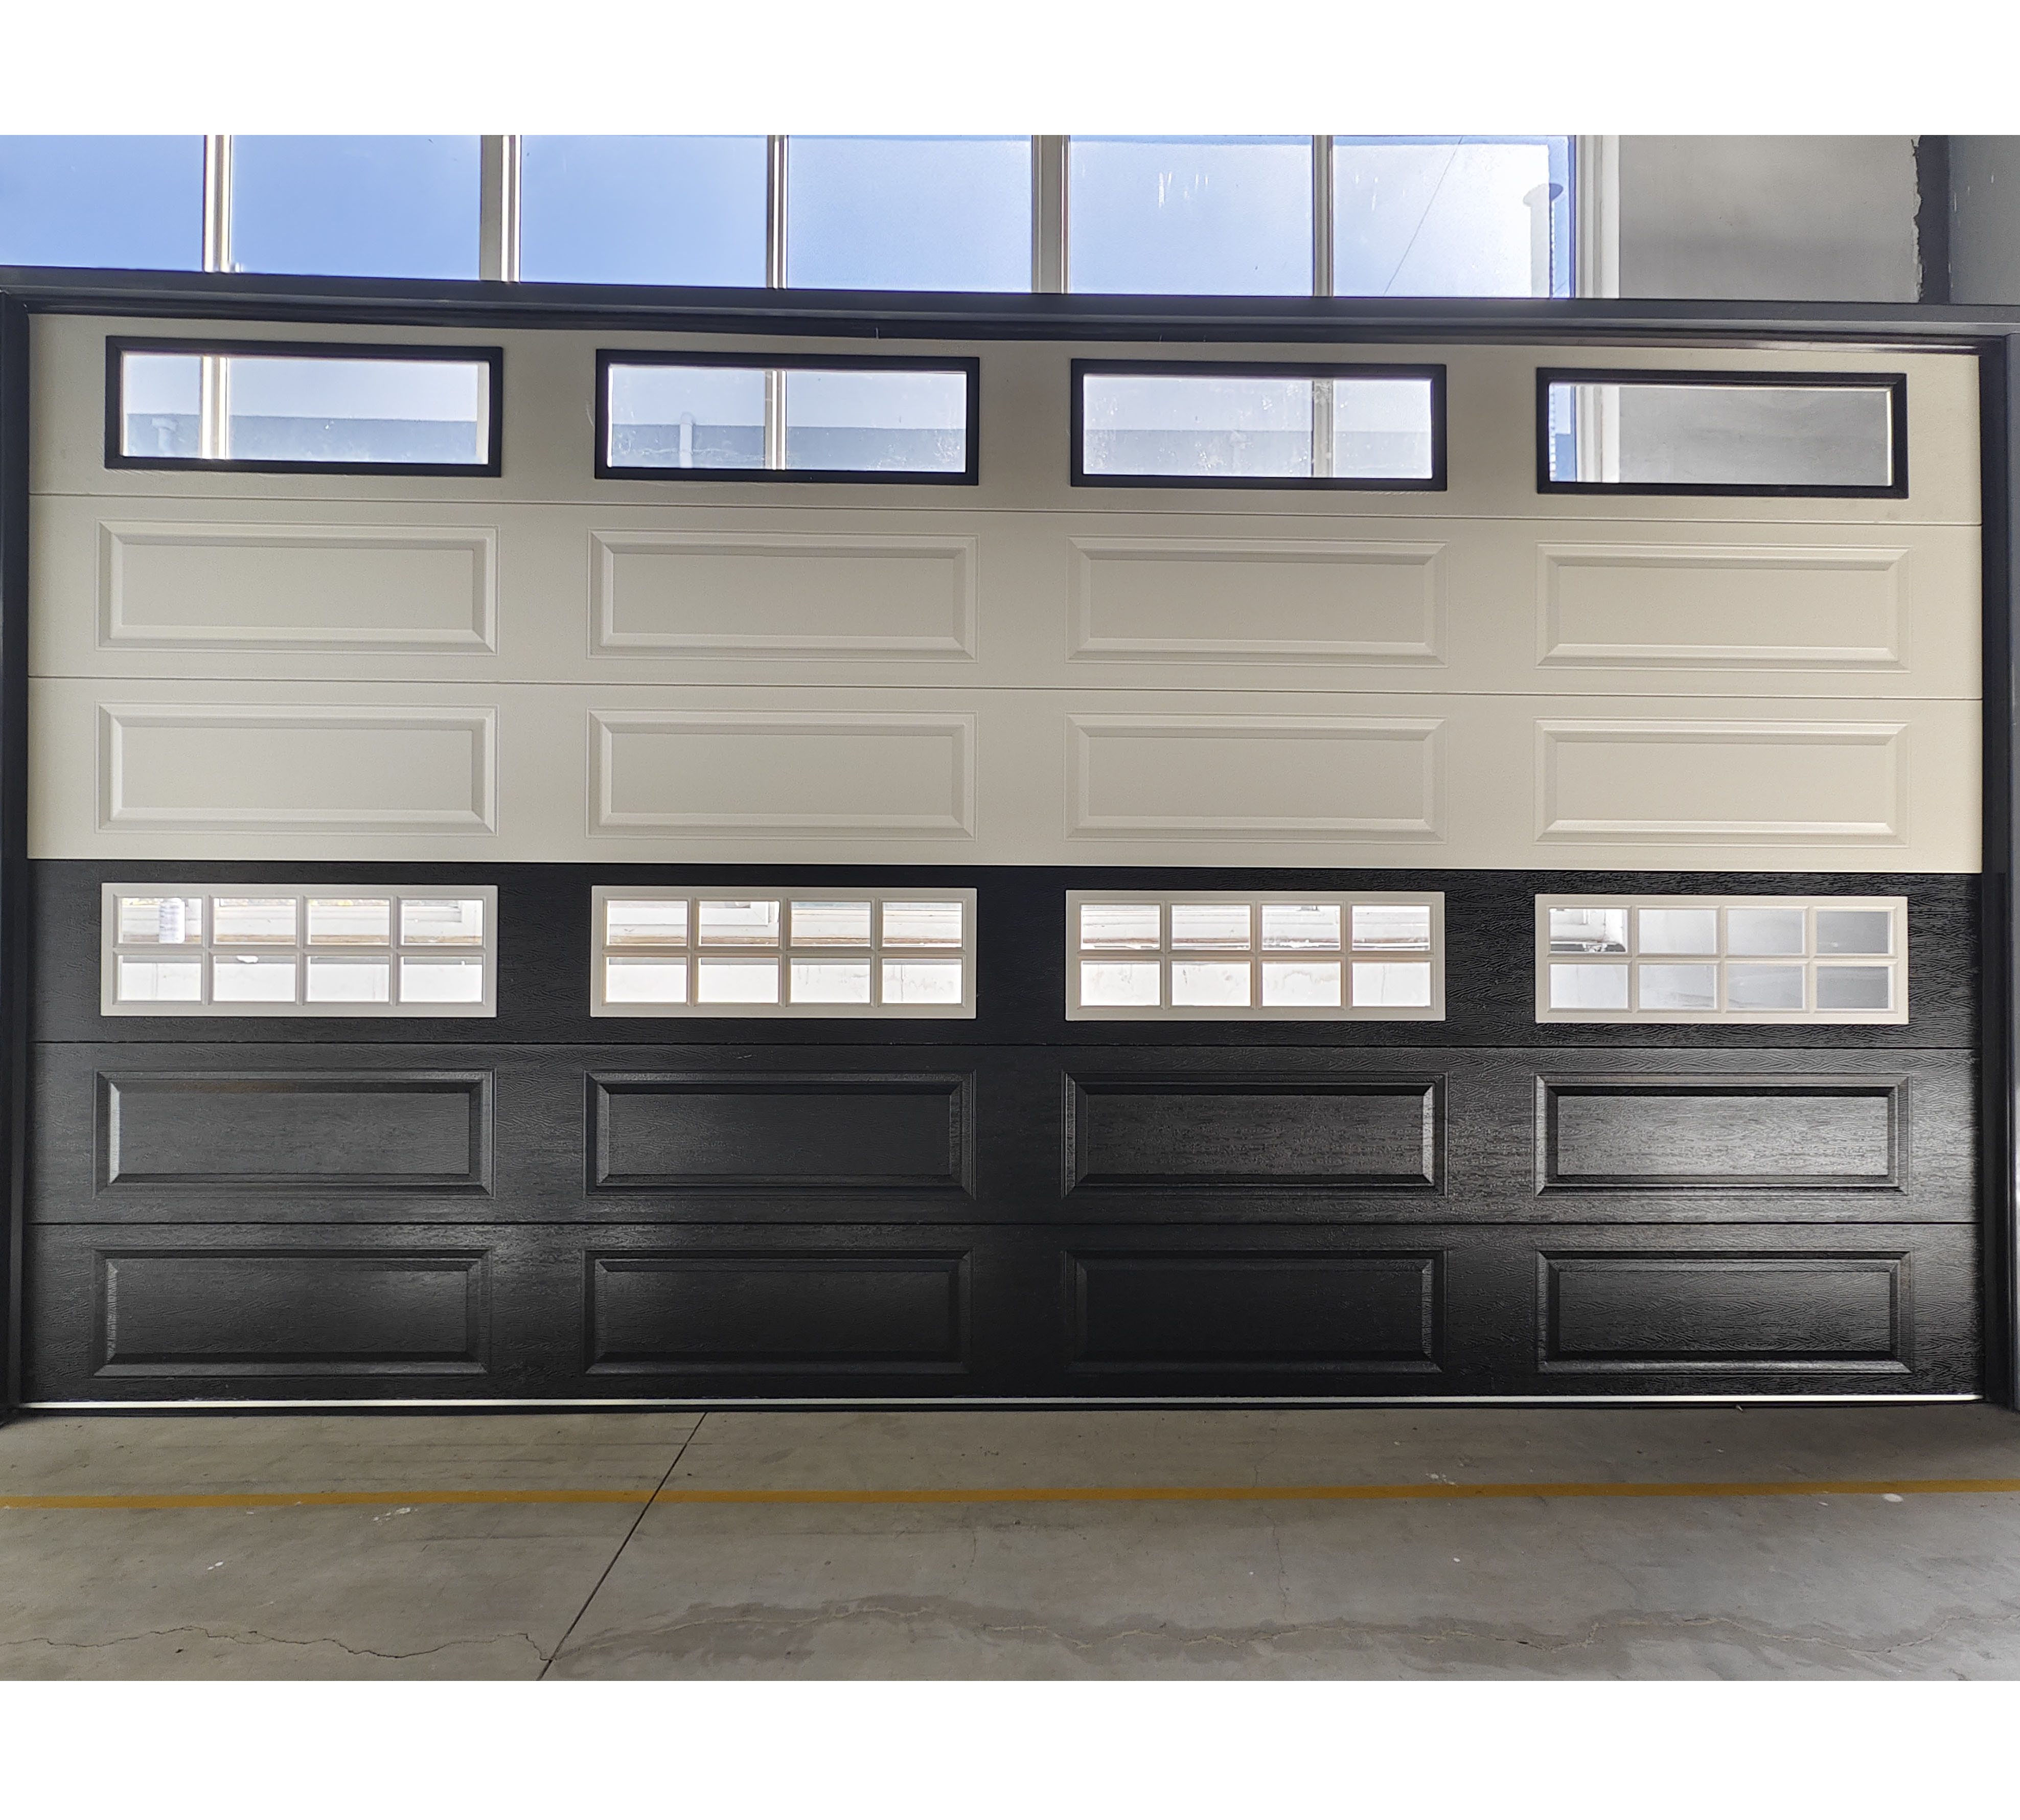 Простая и просторная вилла, перспективная гаражная дверь, раздвижная дверь.